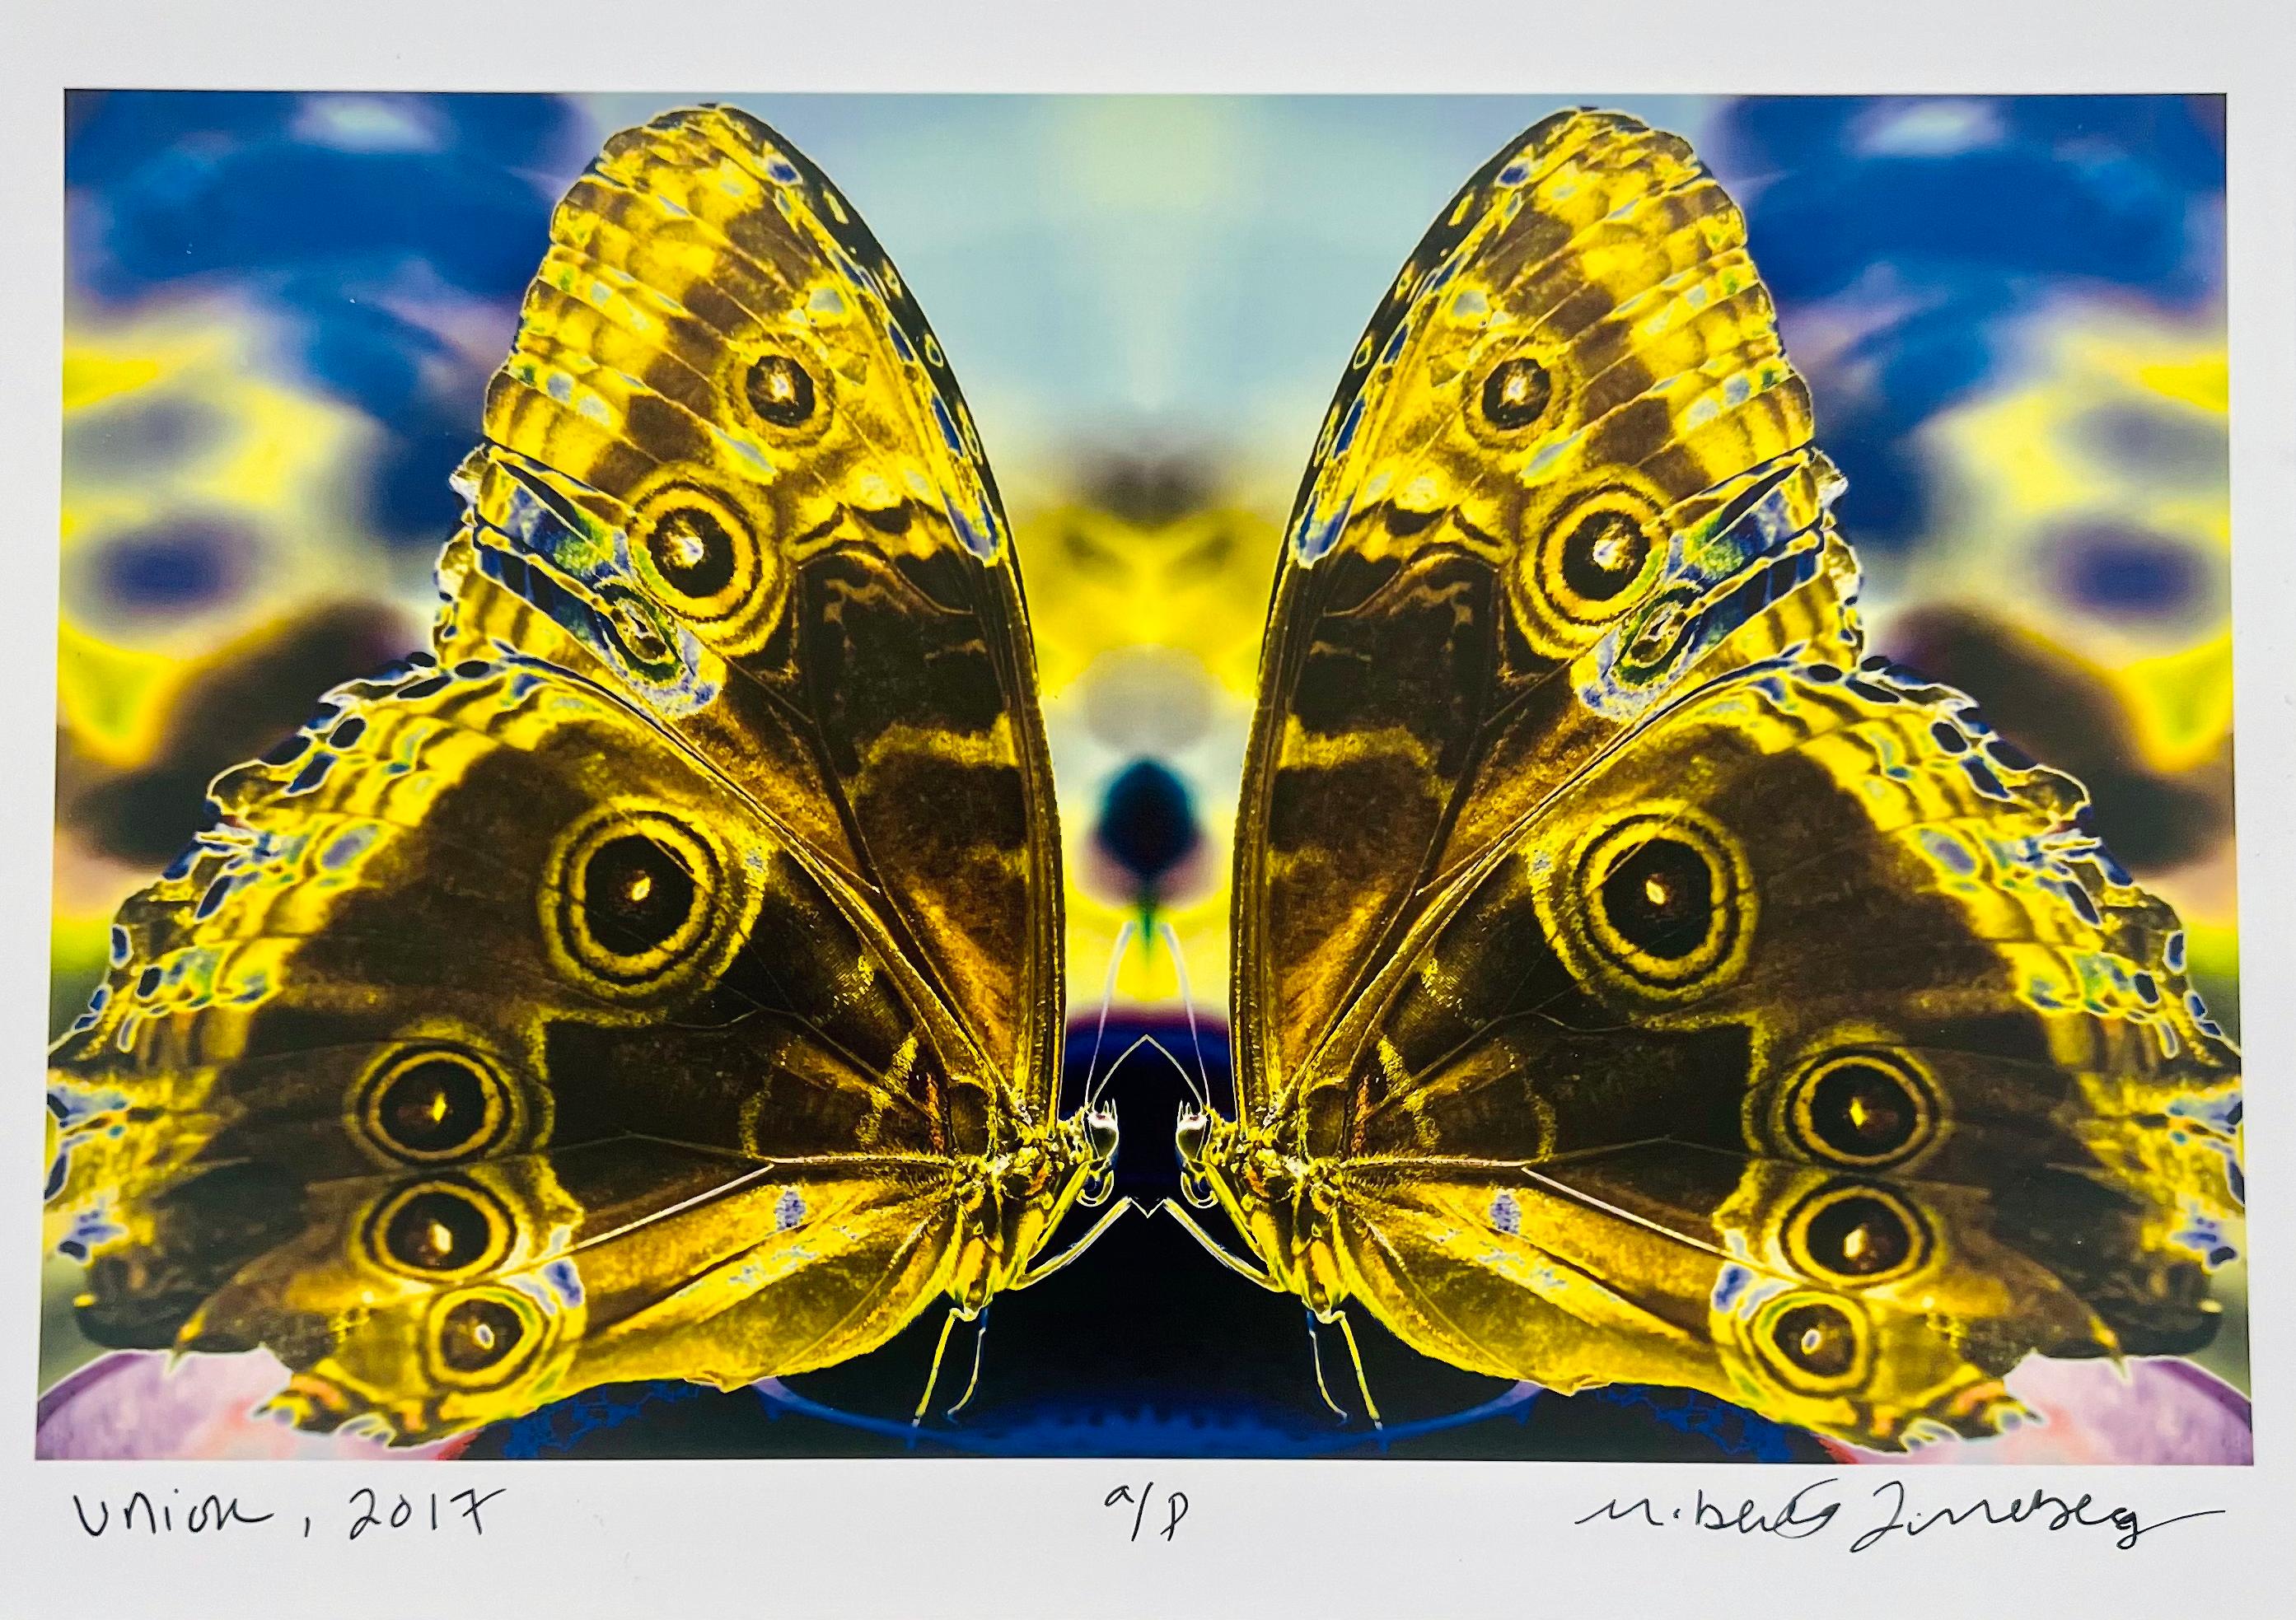 Roberta Fineberg Color Photograph – Union, Farbfotografie von Schmetterlingspaar in Schmetterlingsserie, Schmetterlingspaar